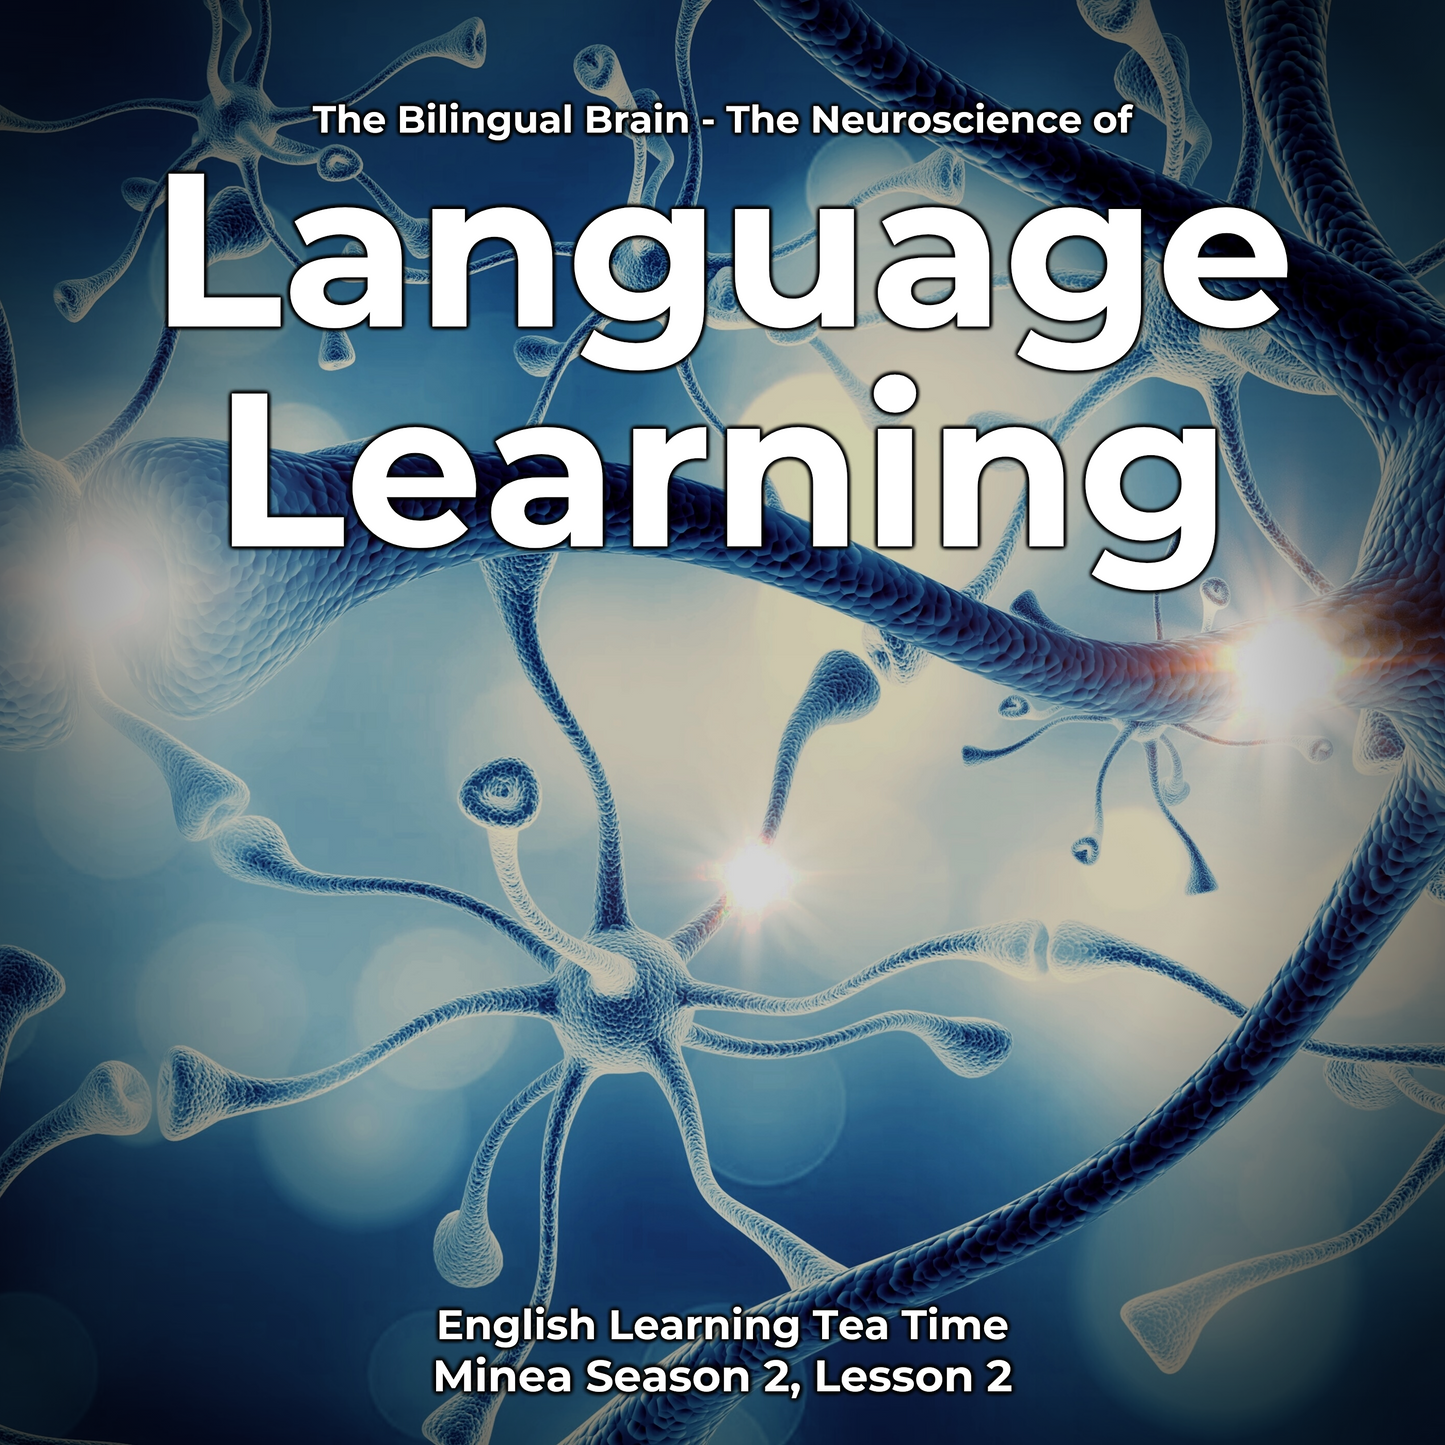 English Learning Tea Time: The Bilingual Brain - The Neuroscience of Language Learning (Minea Season 2, Lesson 2)